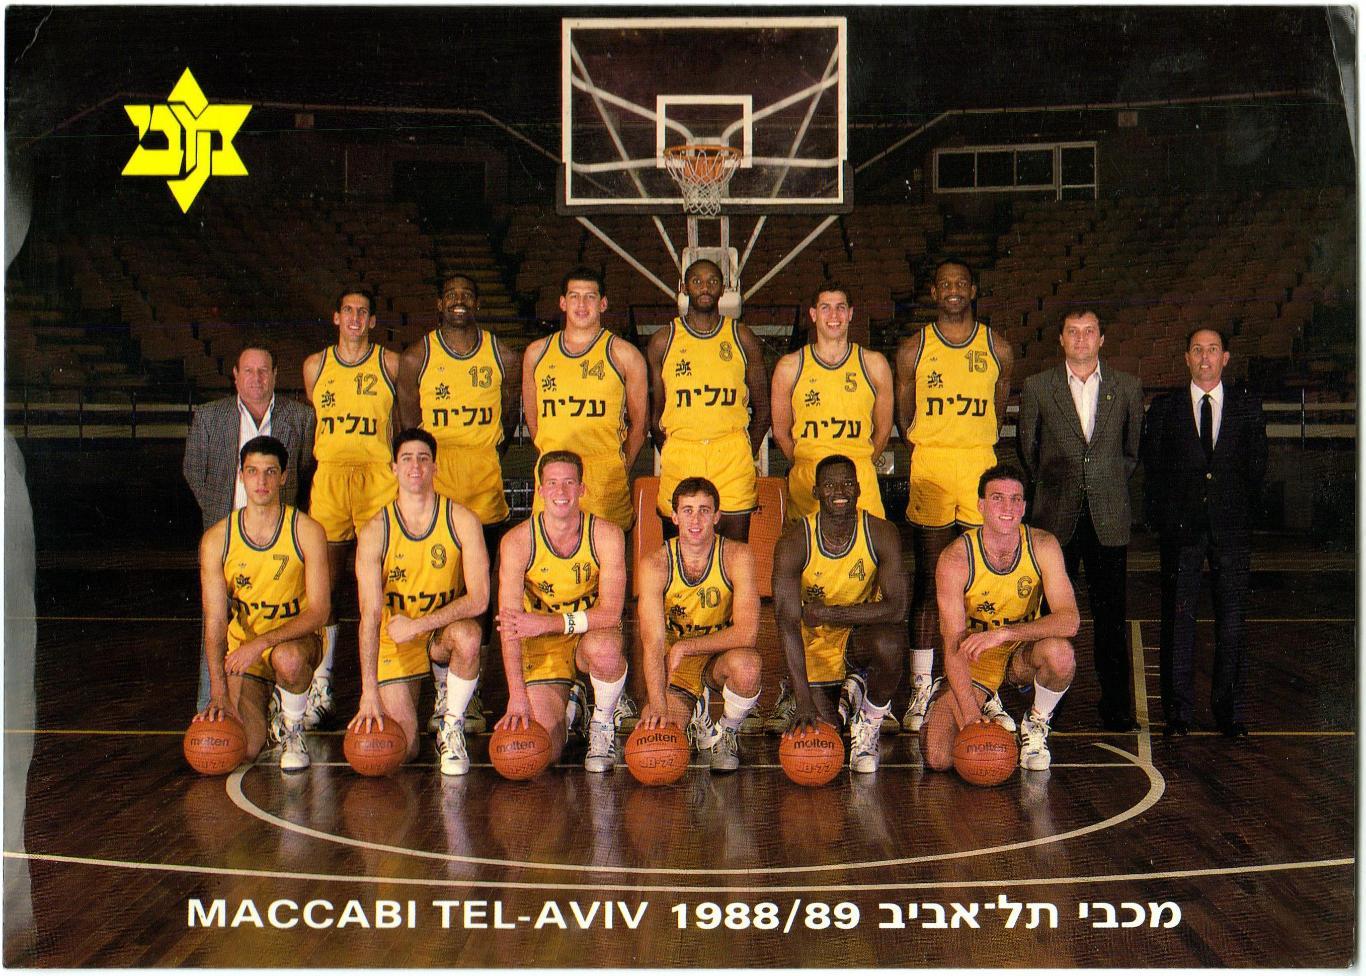 Открытка большого формата БК Маккаби / Maccabi Тель-Авив Израиль 1988/1989